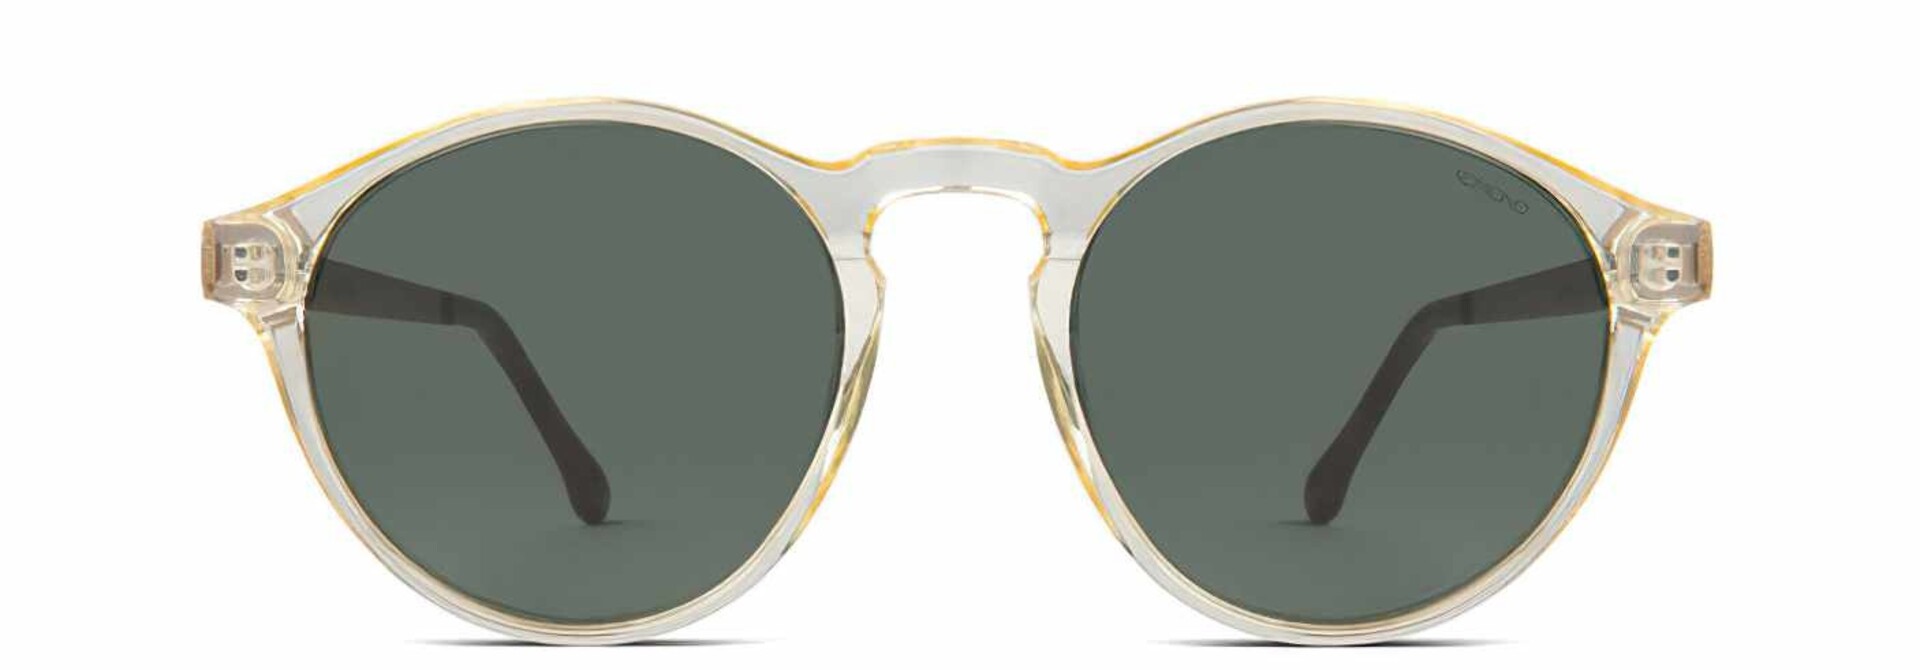 ♣ Devon Metal Prosecco Sunglasses